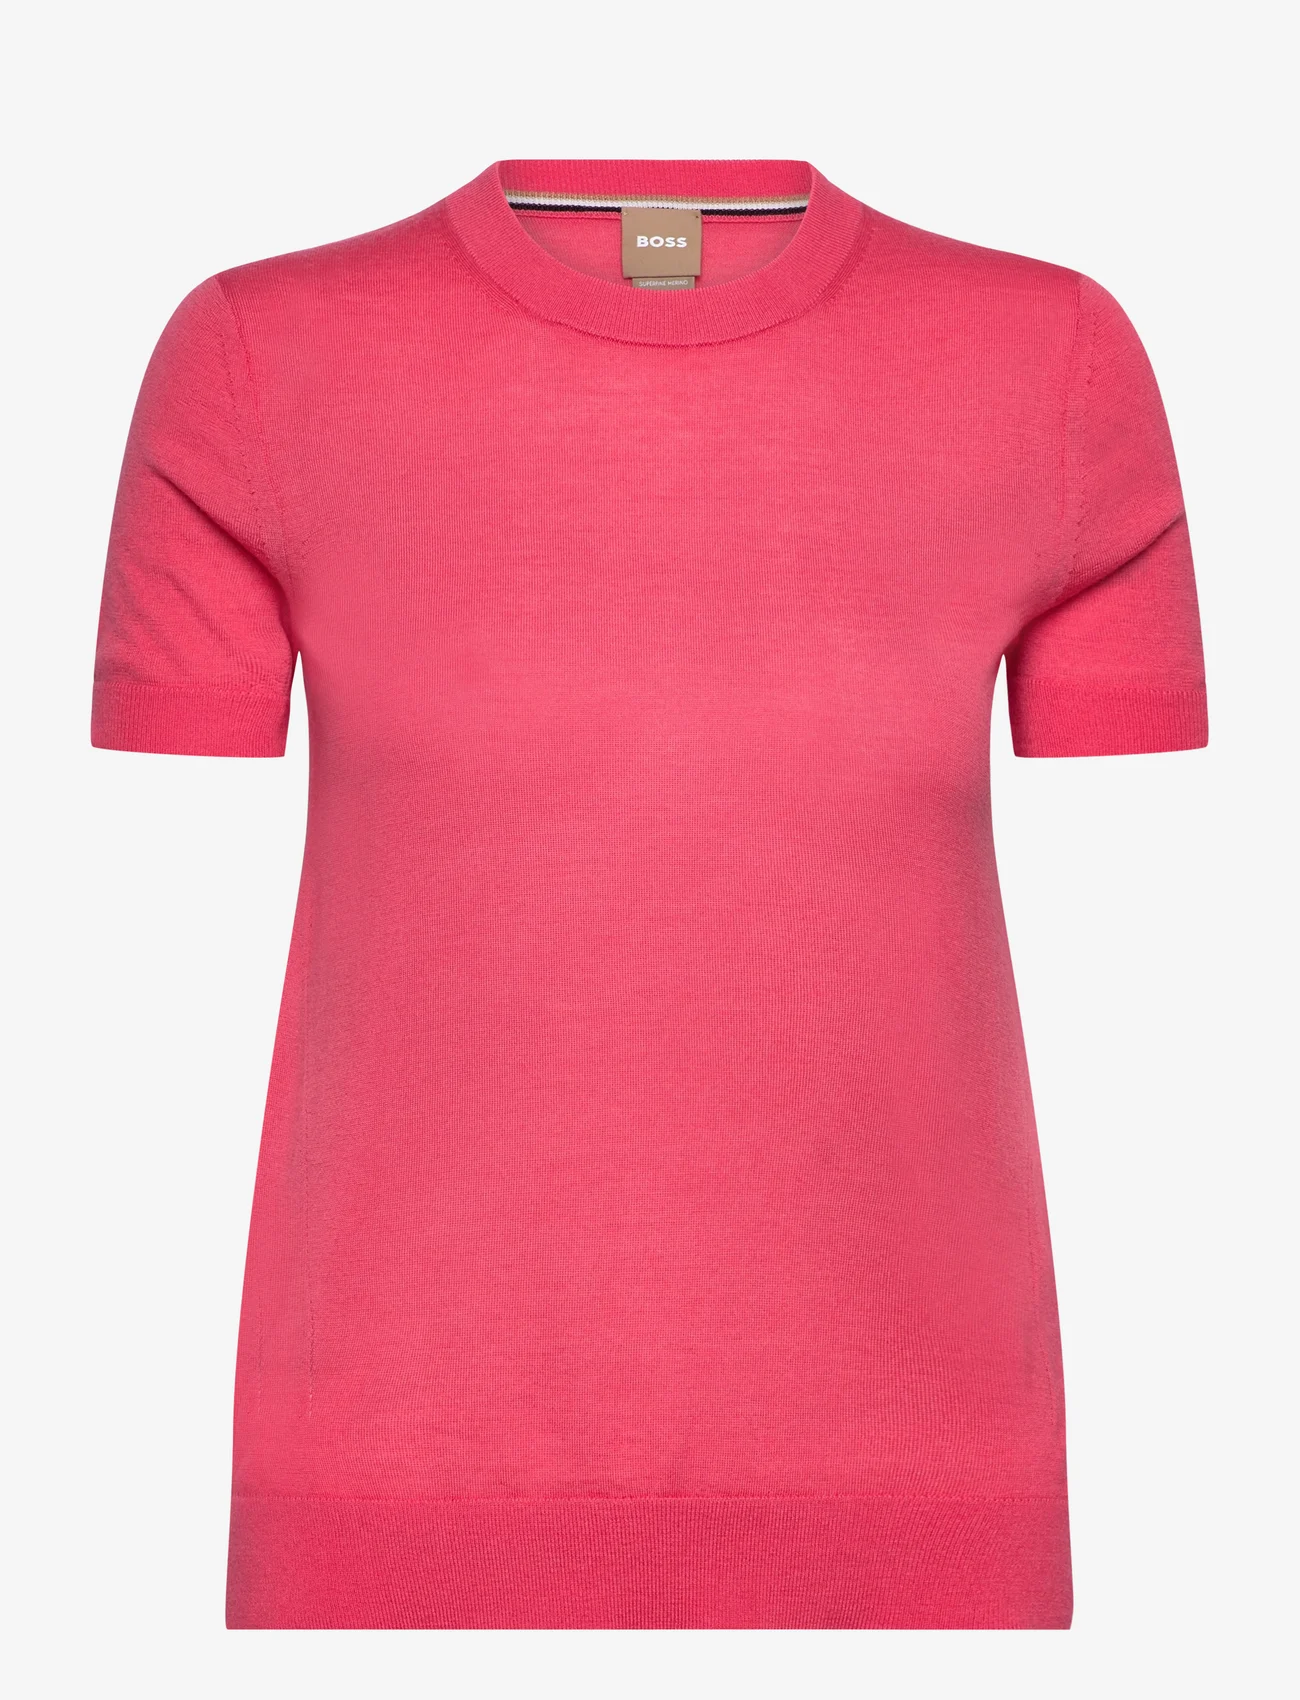 BOSS - Falyssiasi - tröjor - bright pink - 0